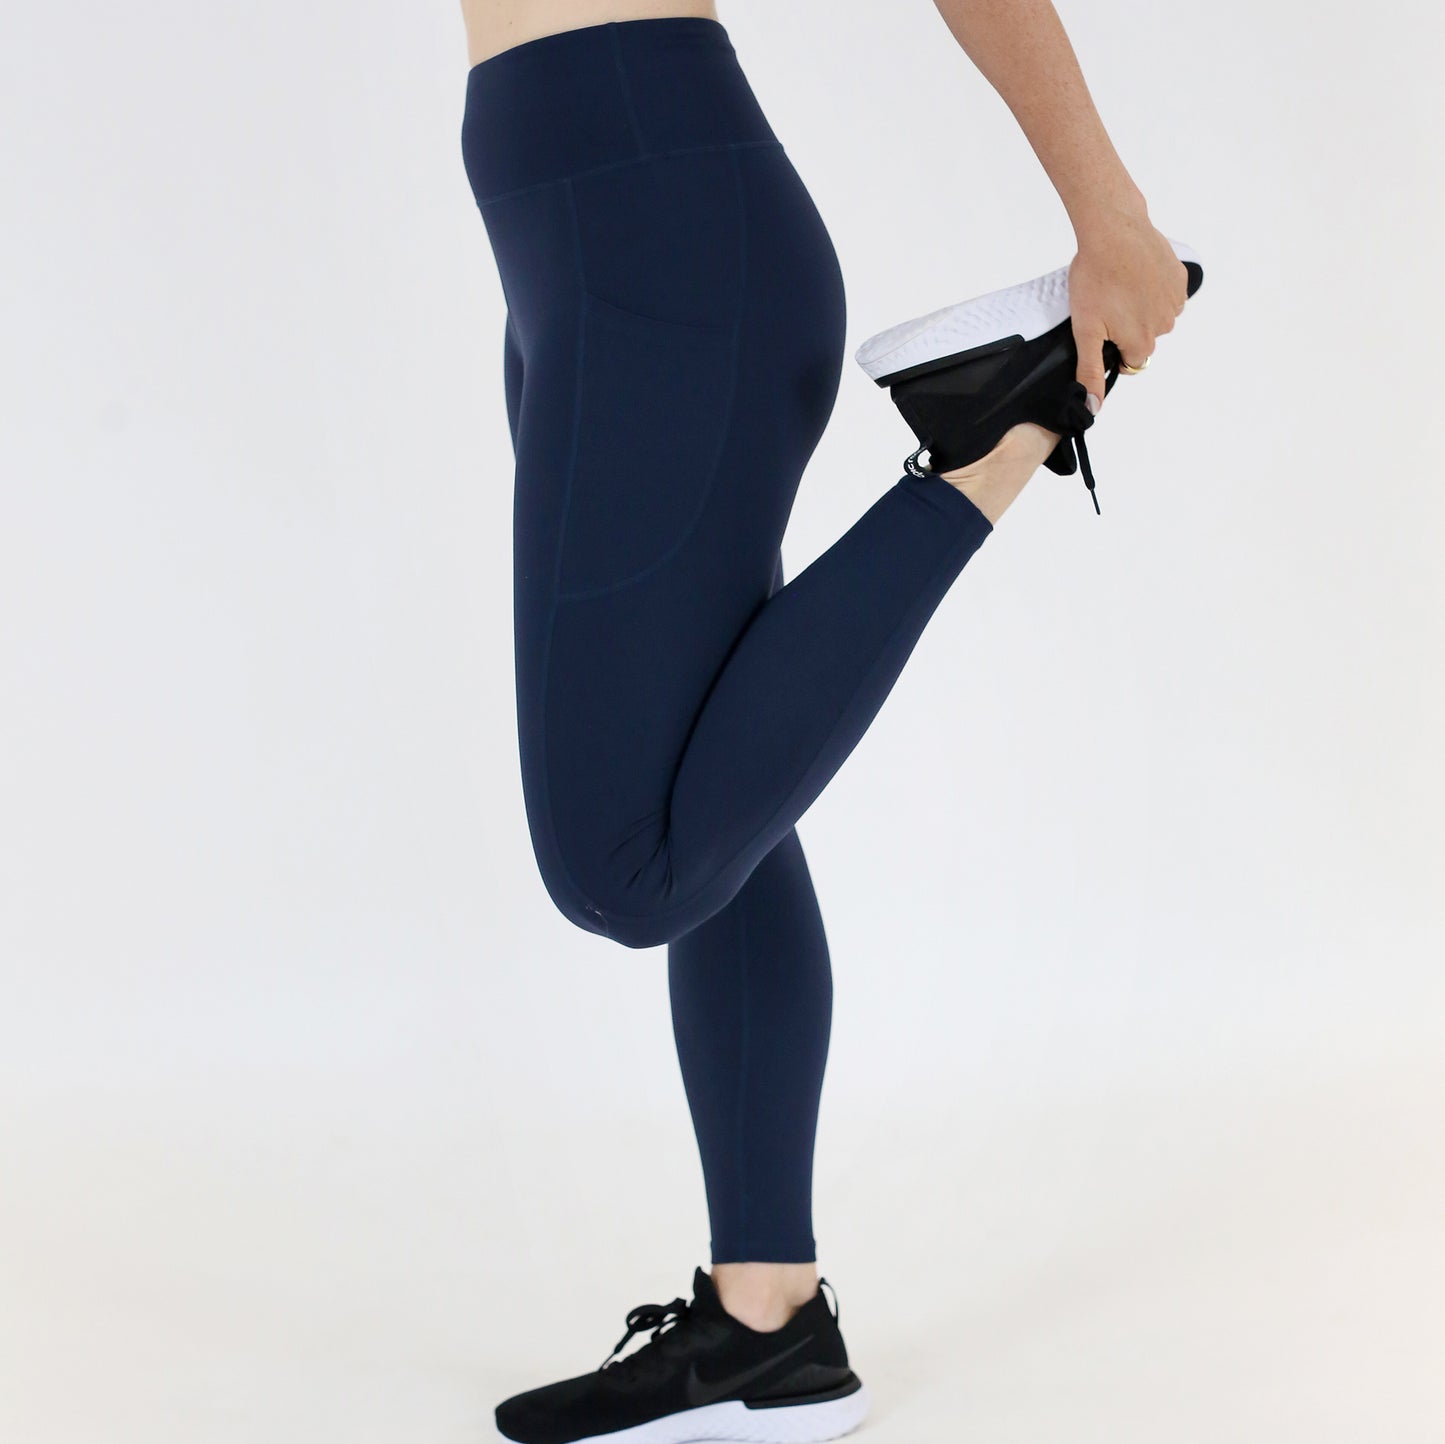 Navy blue capris women gym wear High waist 2 back pockets - Belore